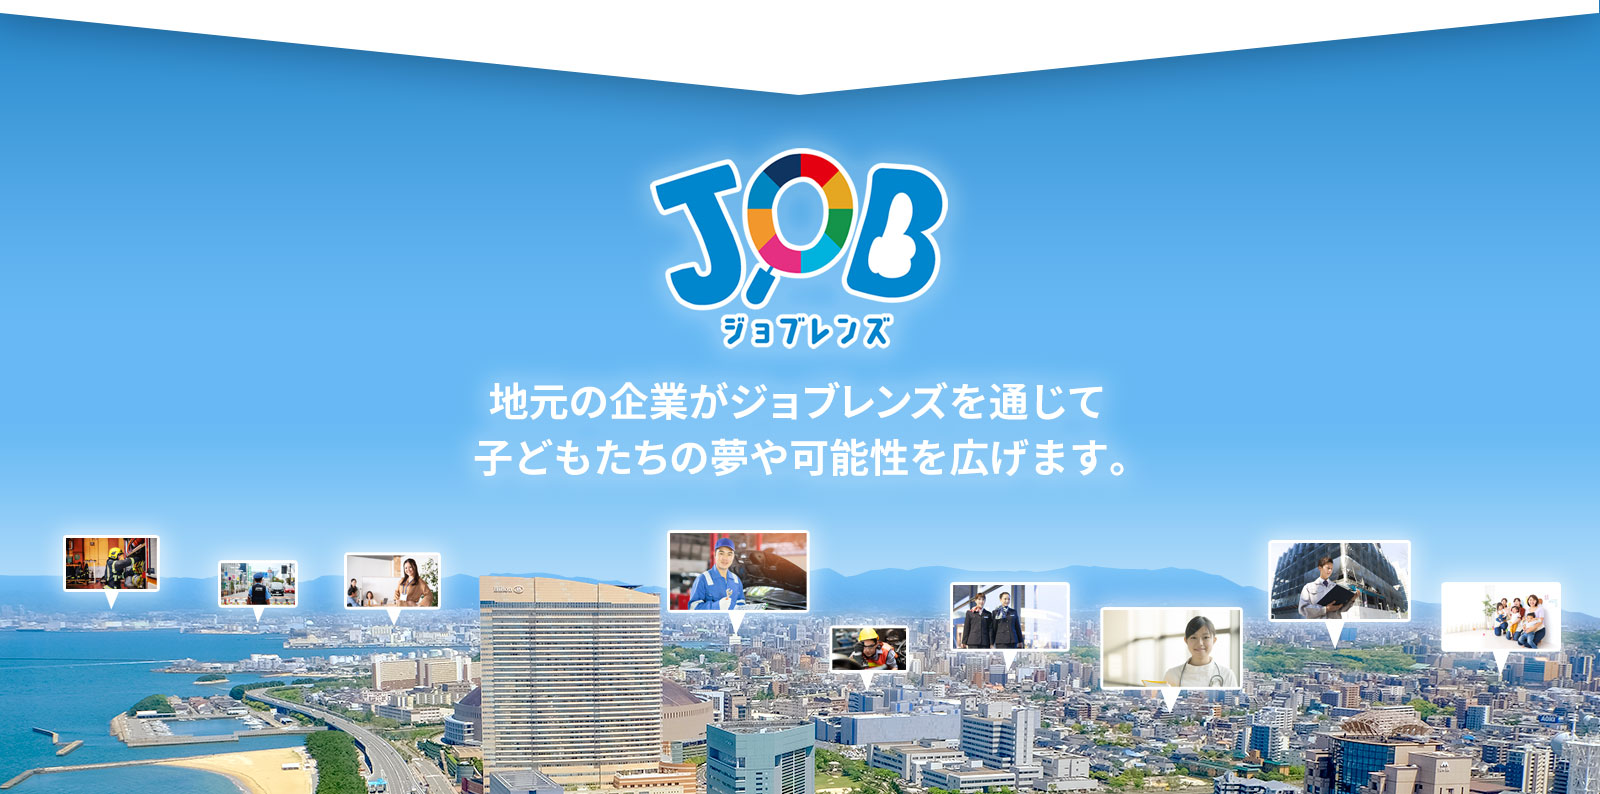 ジョブレンズ:福岡の企業がジョブレンズを通じて子どもたちの夢や可能性を広げます。